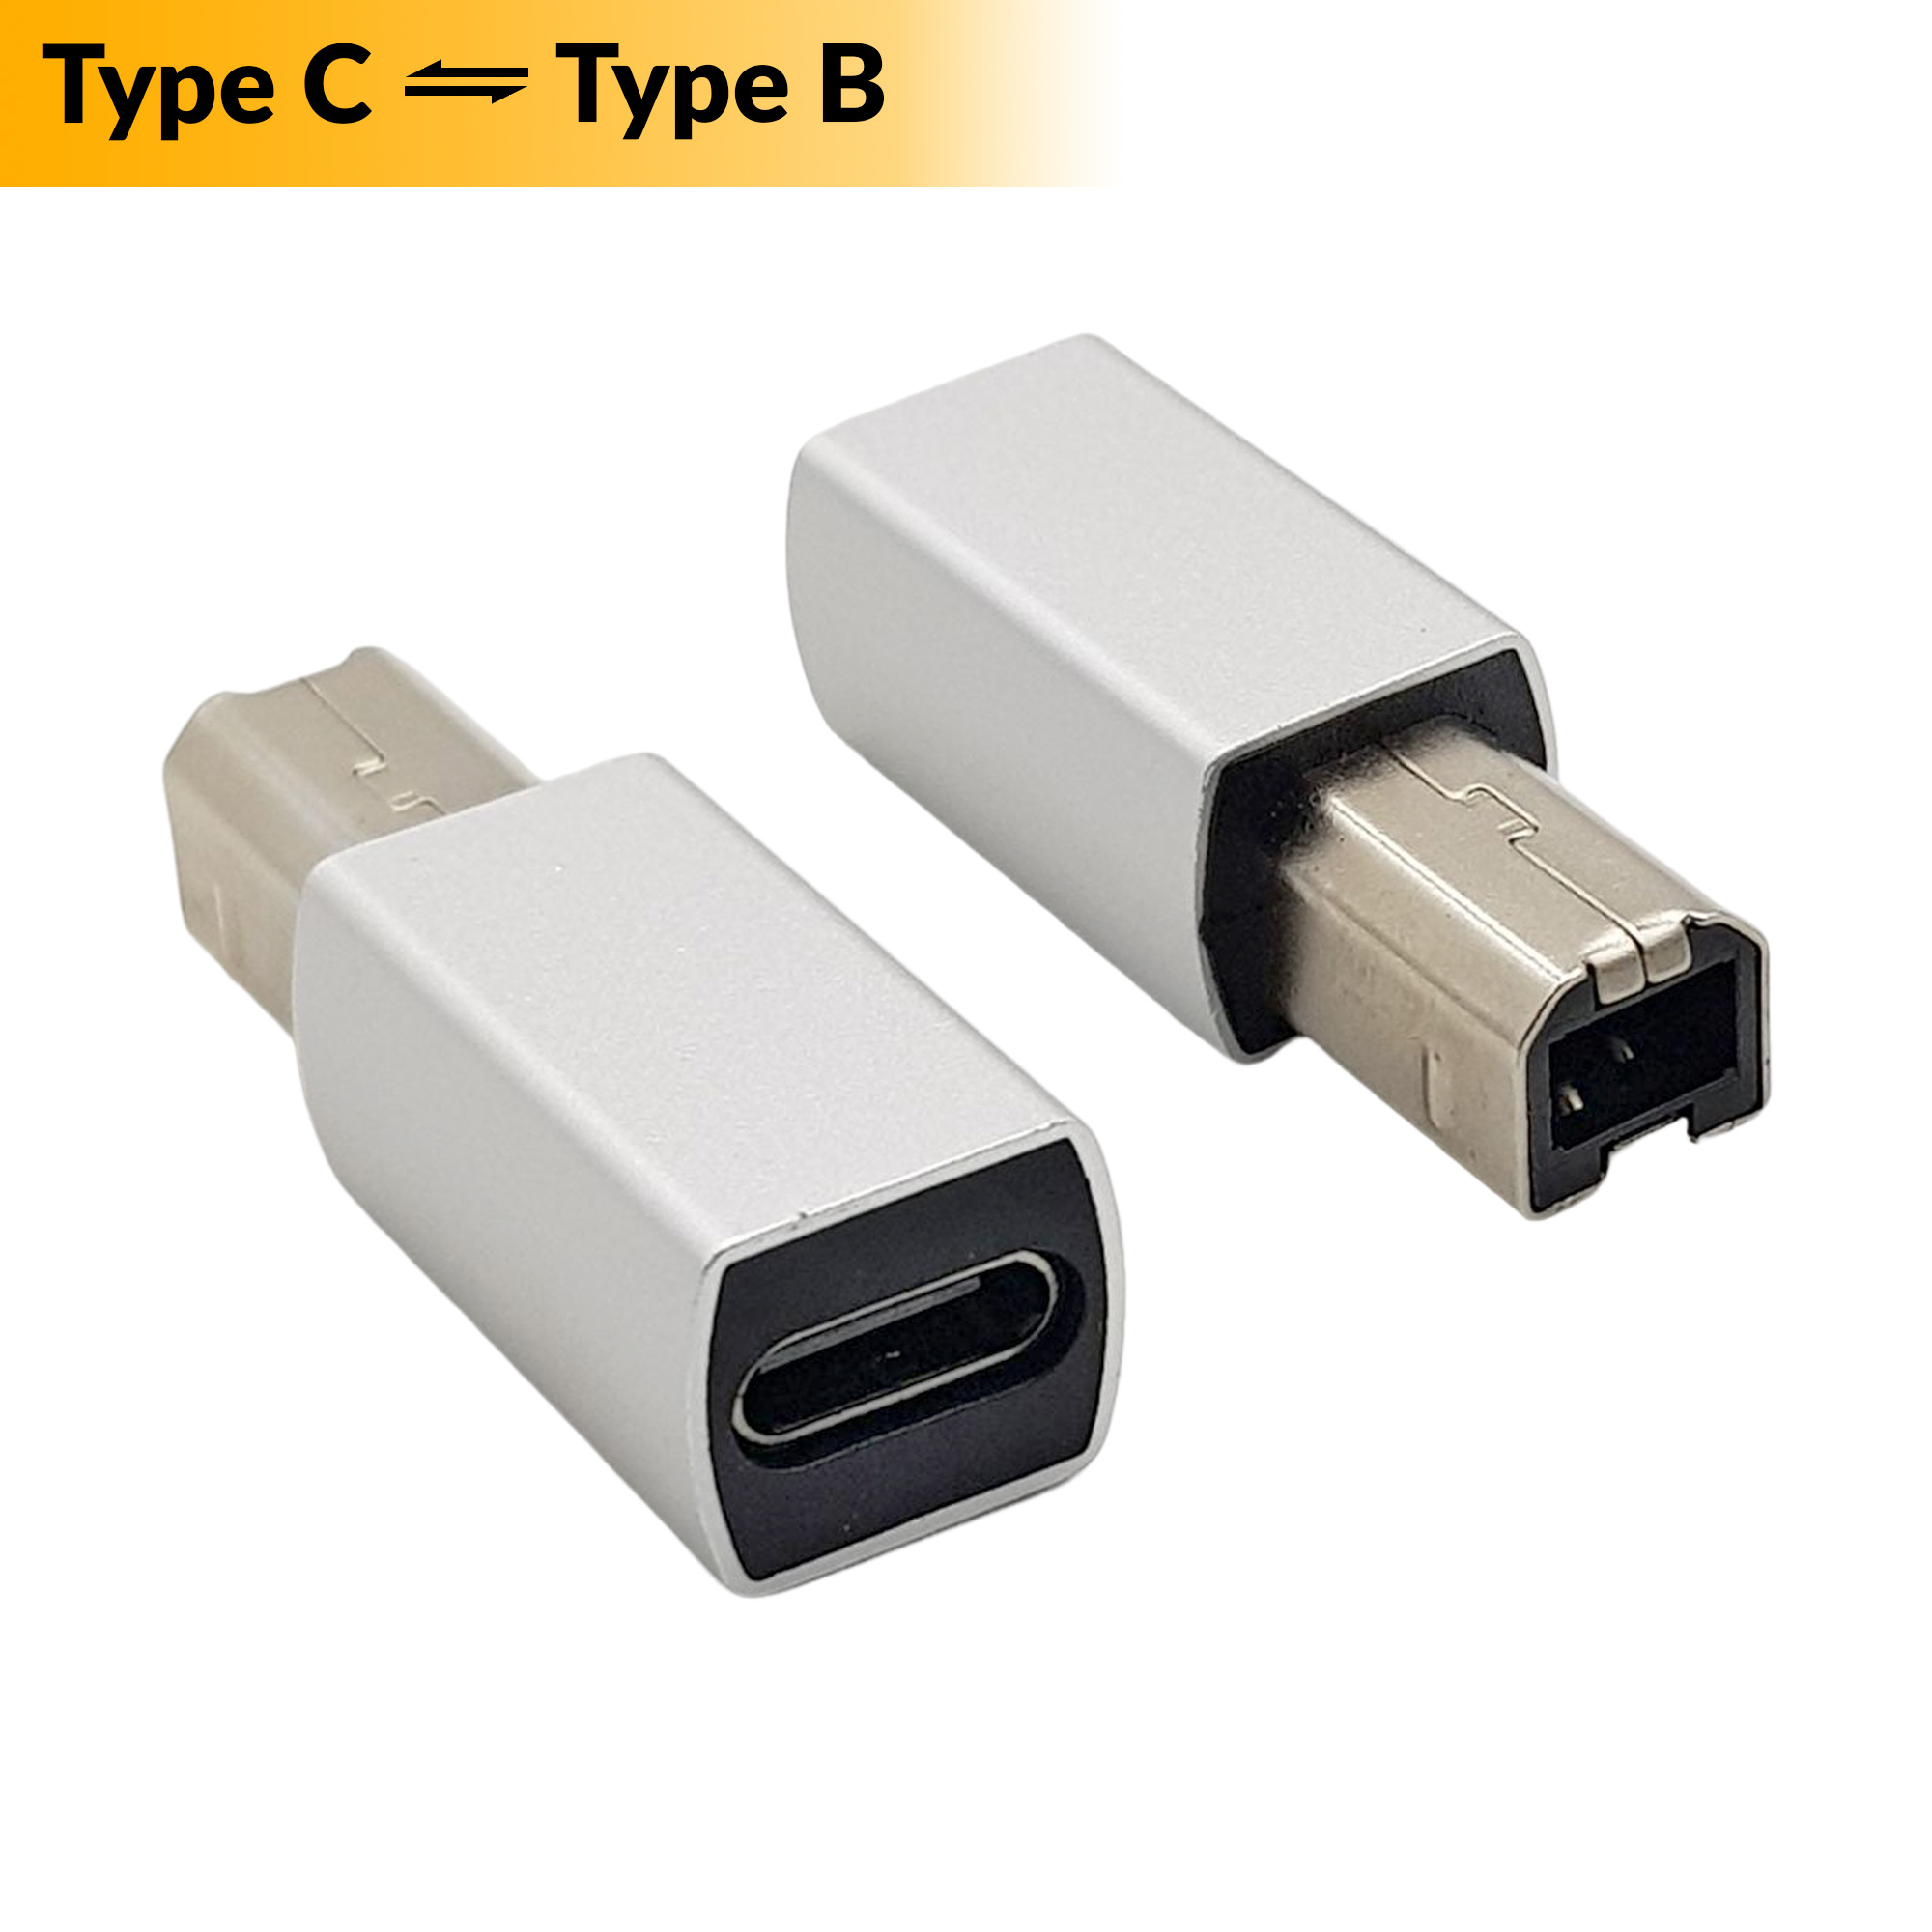 Đầu chuyển đổi cổng USB Type-C sang USB Type-B